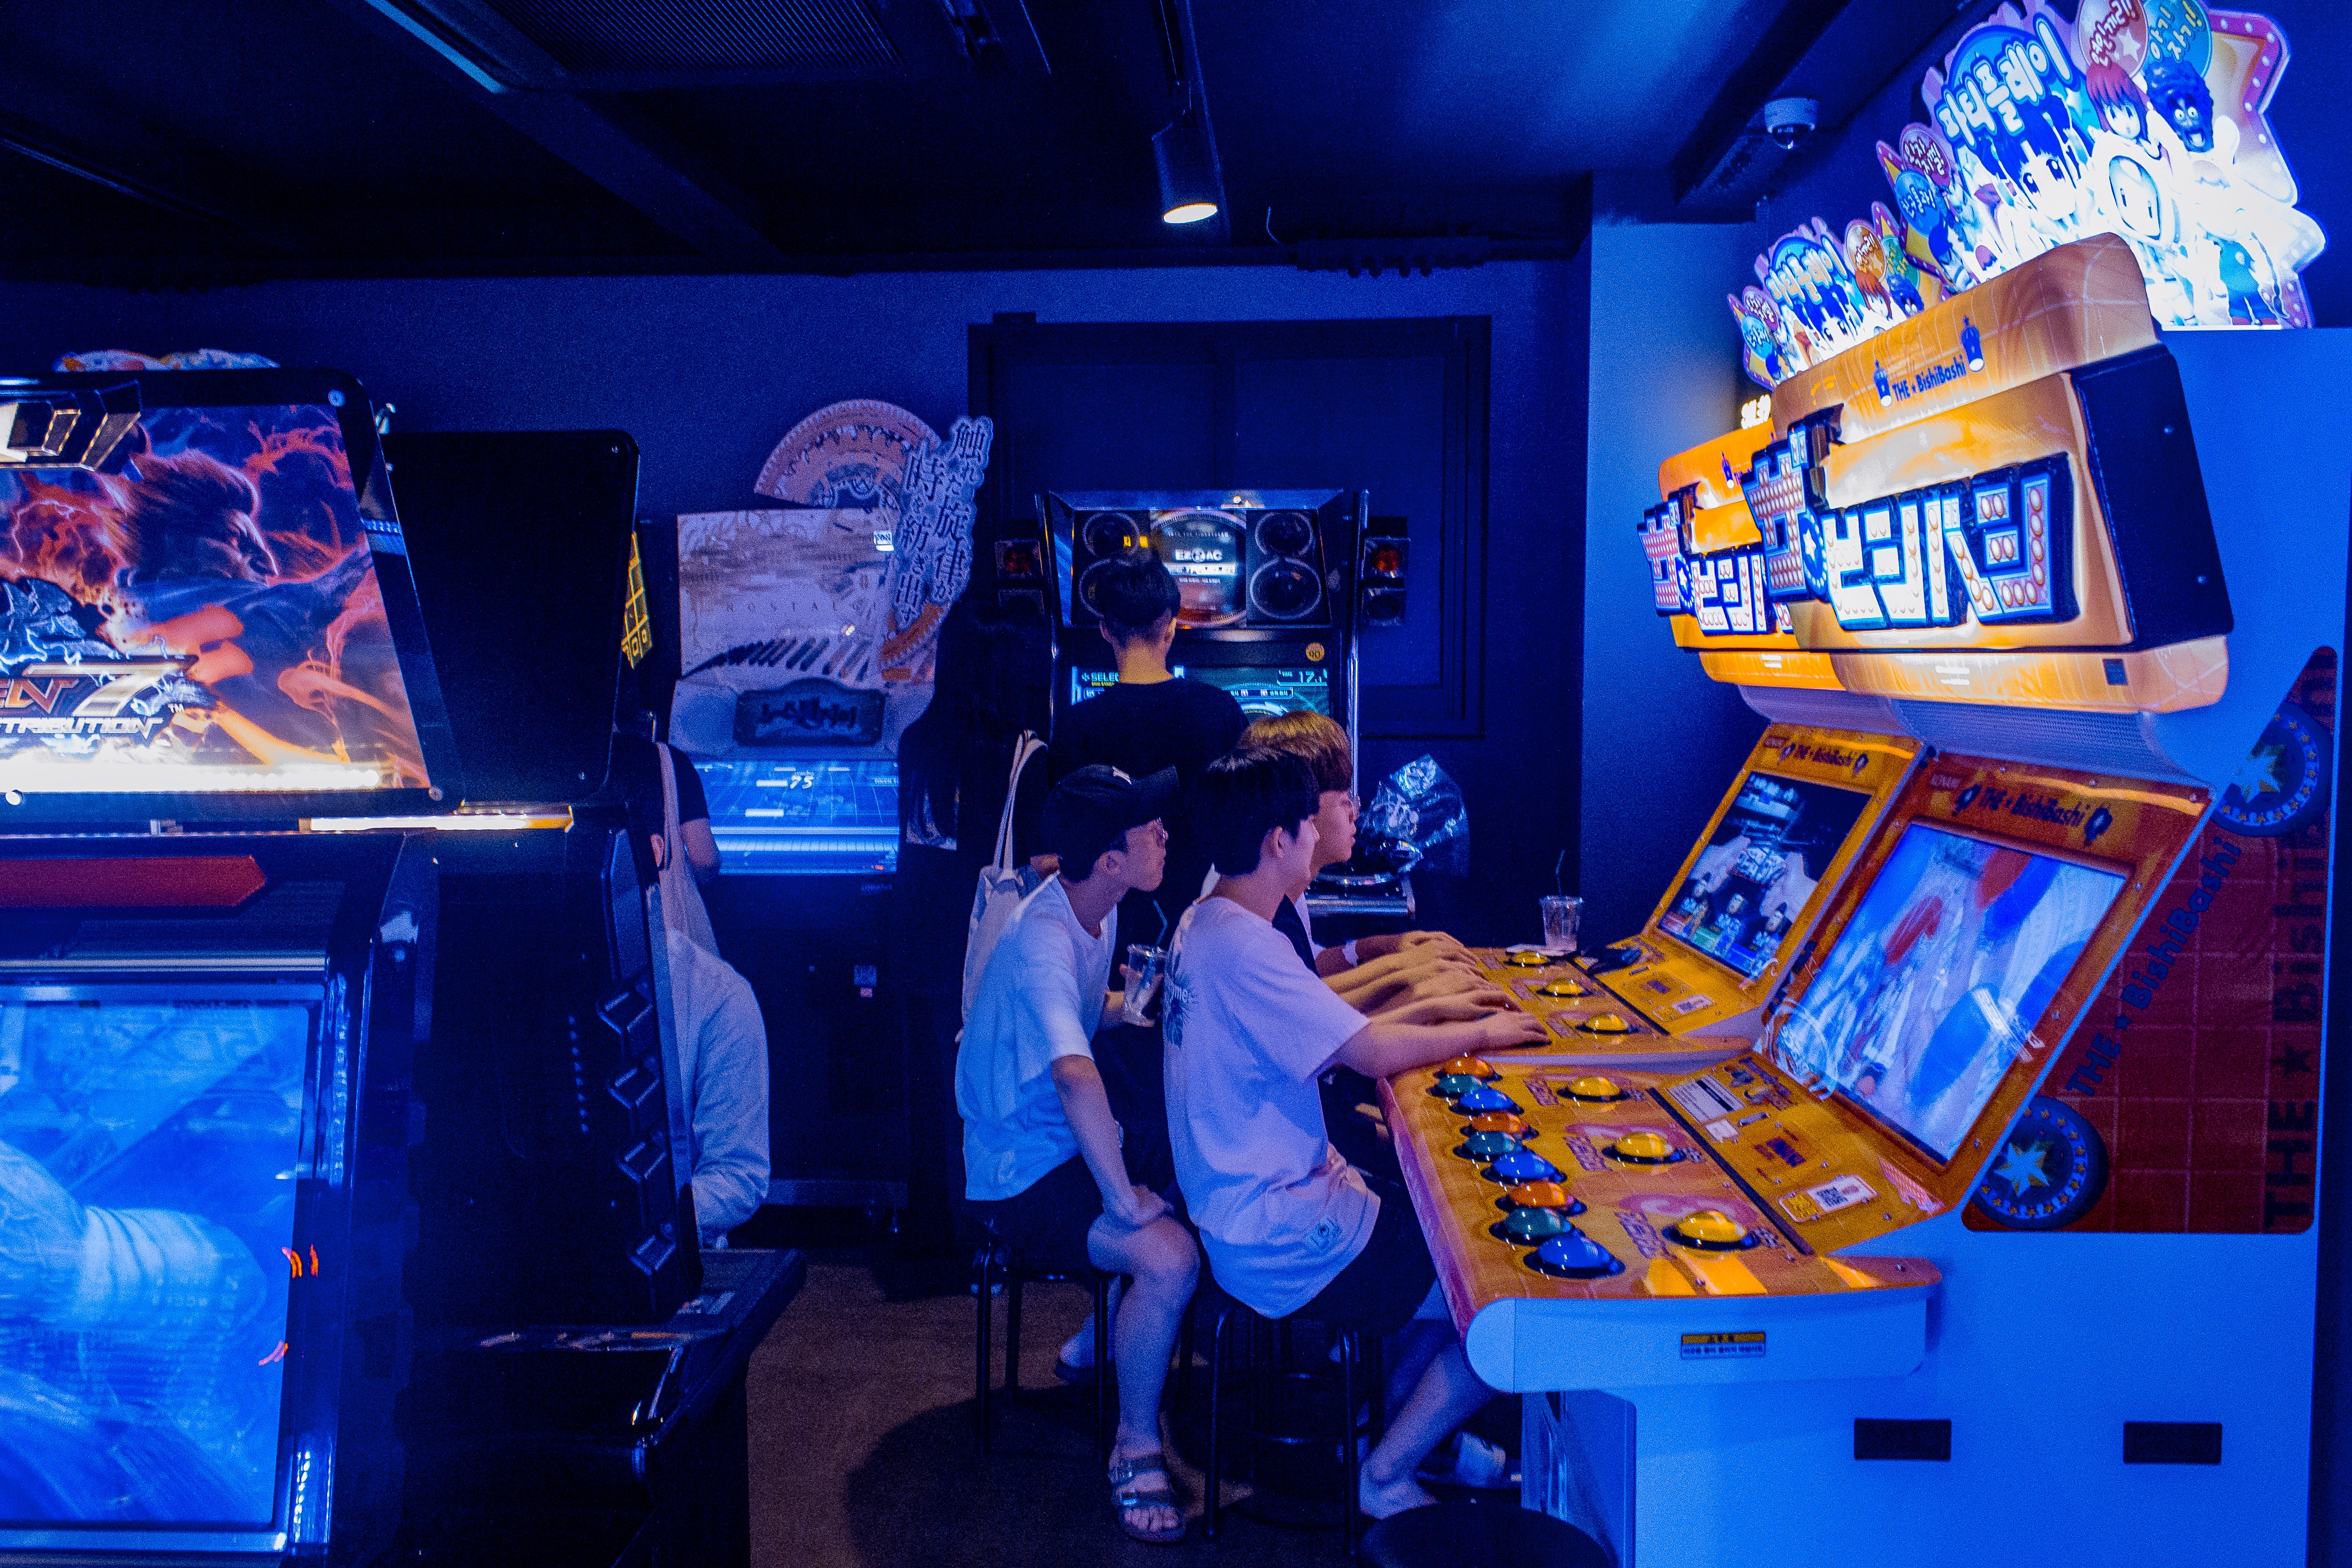 My games игровой. Развлечения в компьютере. Развлечение с компьютером без игр. Игры для 20 человек в помещении. Arcade Korea.